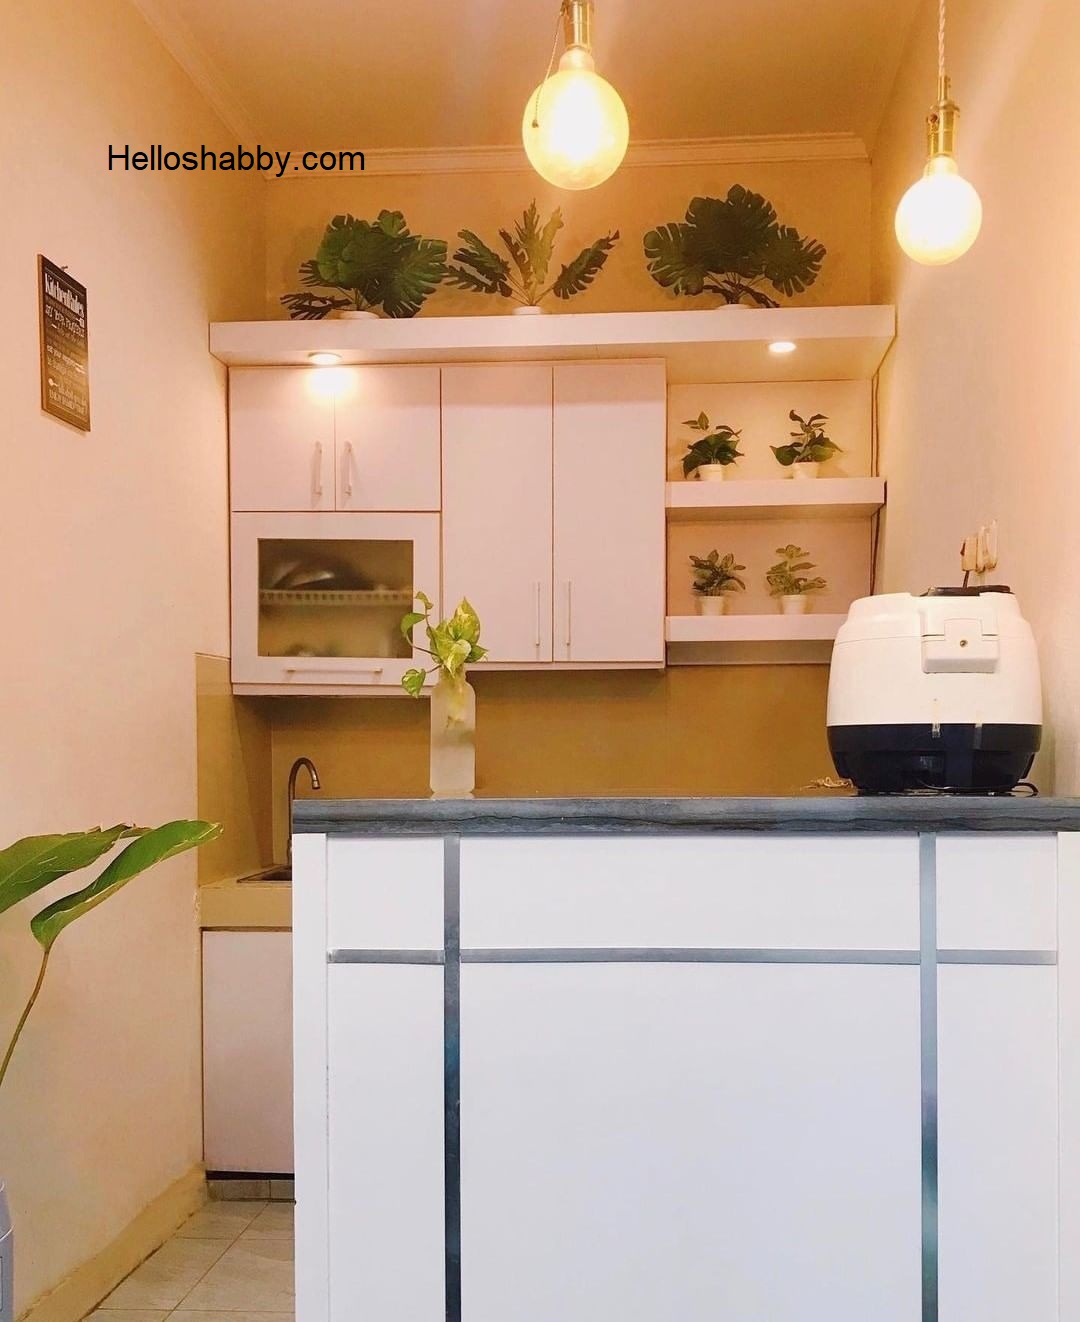 6 Desain Dapur Mungil Kitchen Set Ukuran 2 X 1 M Yang Hemat Biaya HelloShabbycom Interior And Exterior Solutions